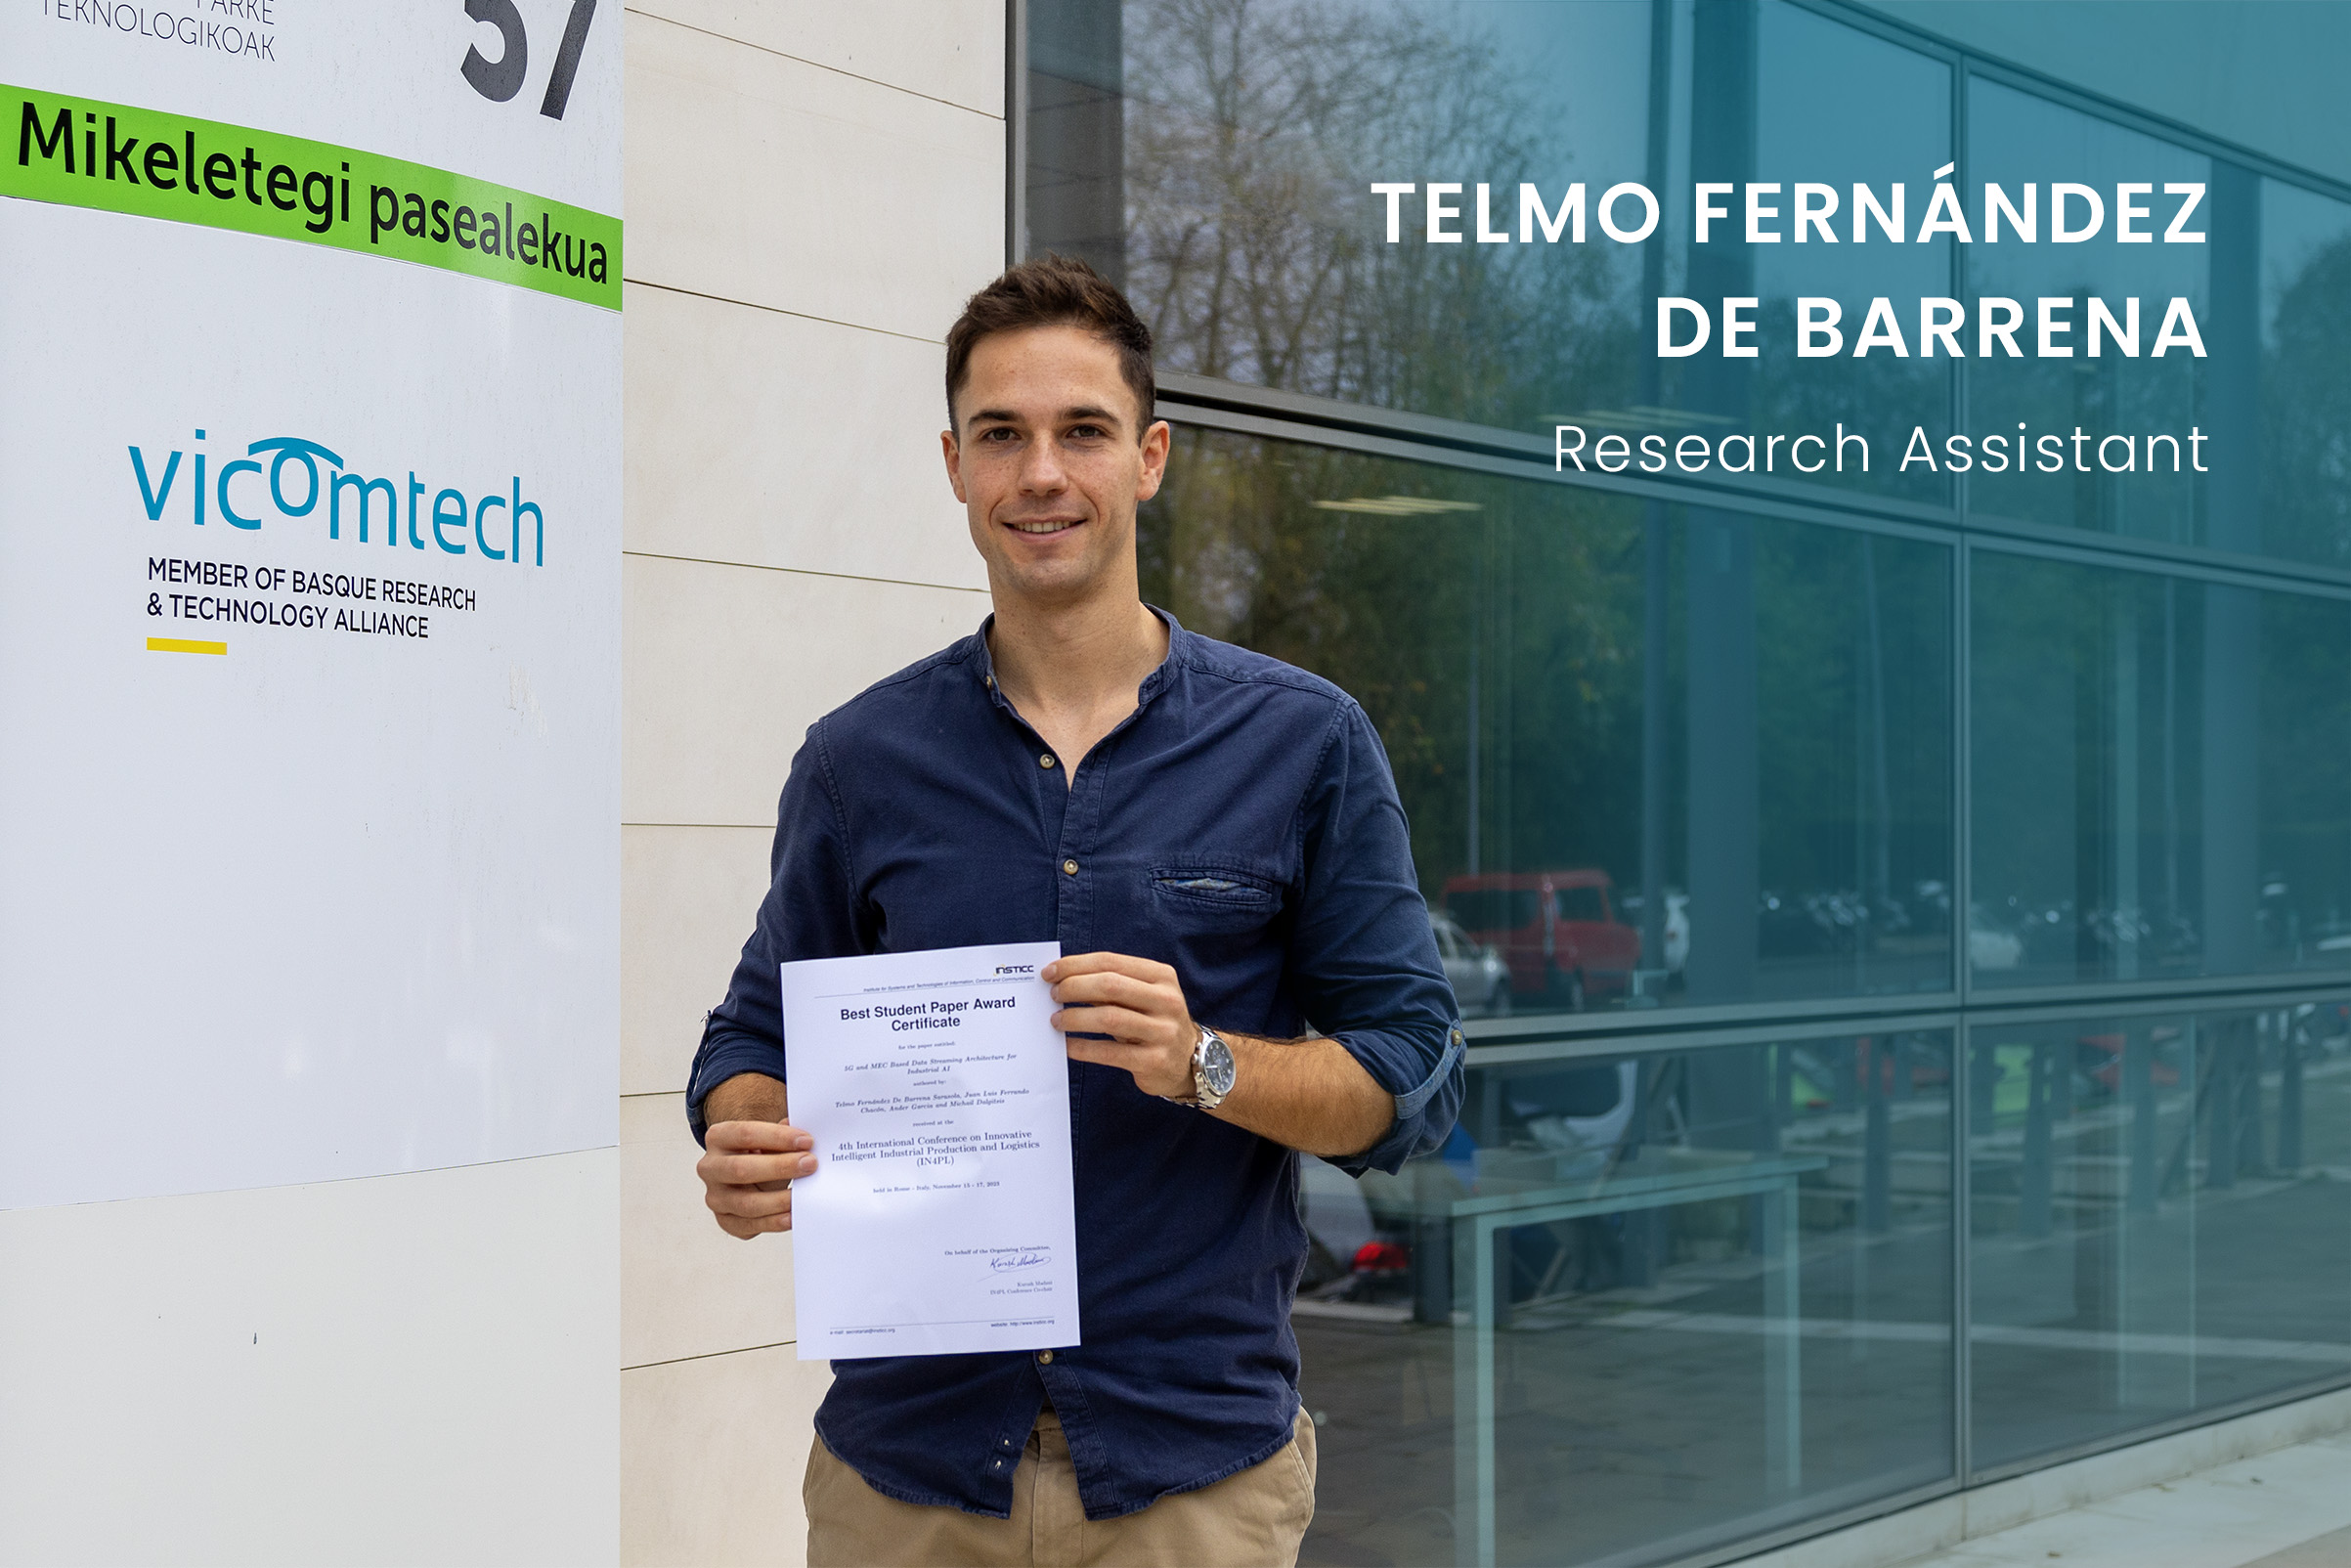 Telmo Fernández De Barrena recibe el Best Student Paper Award en el marco de la conferencia “Innovative Intelligent Industrial Production and Logistics” 2023